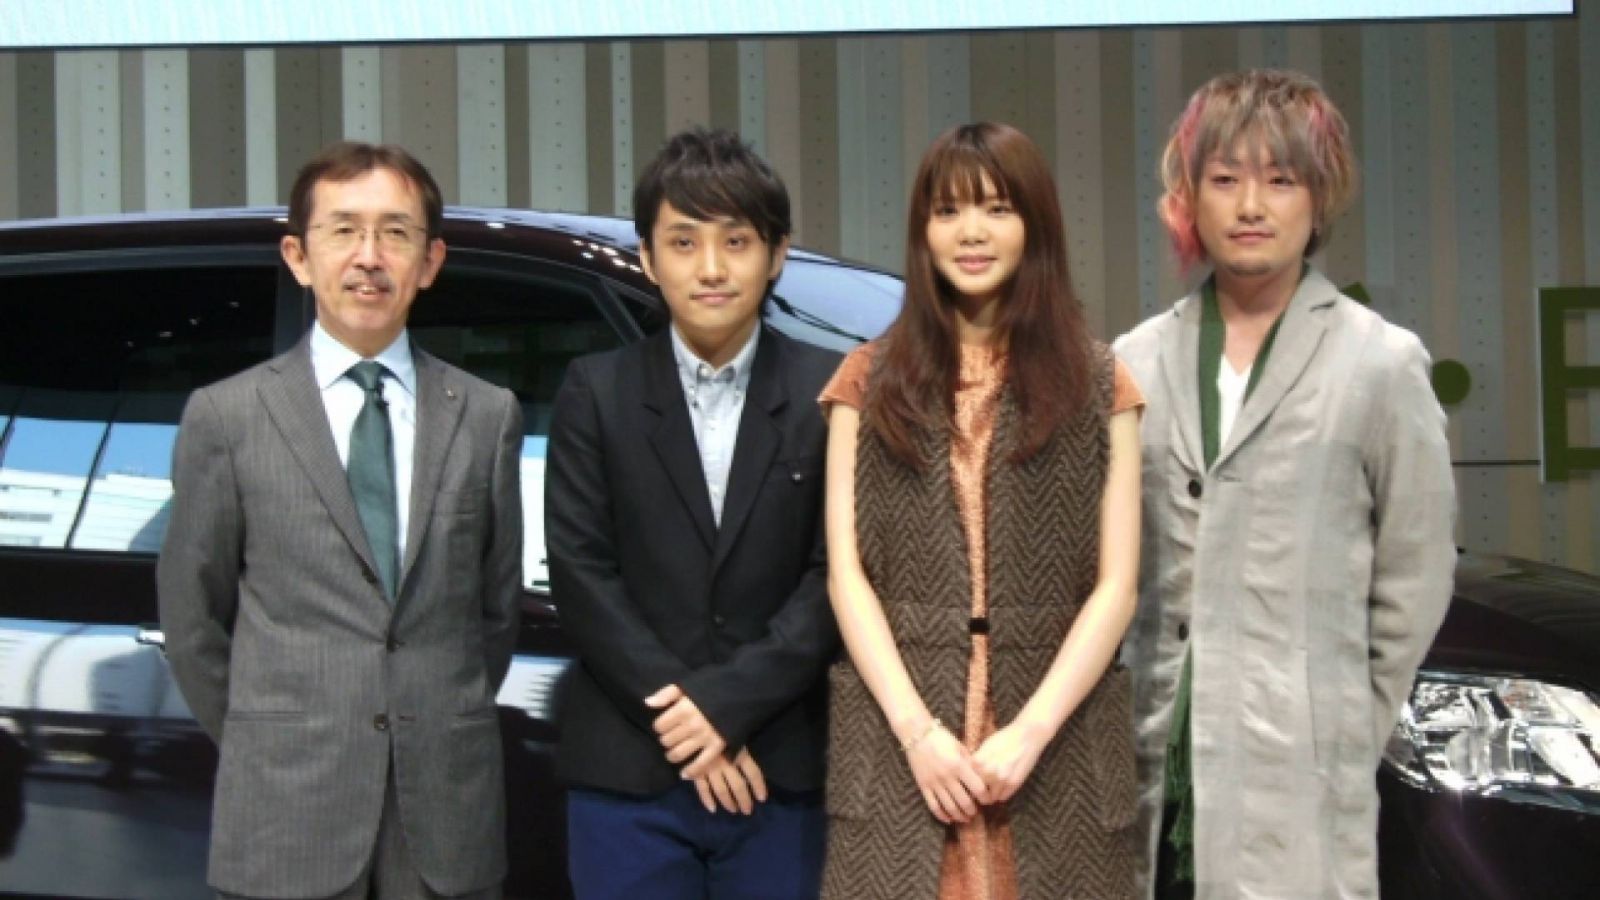 Ikimono-gakari - Serena CM Presentation at Nissan Global © Ikimono Gakari